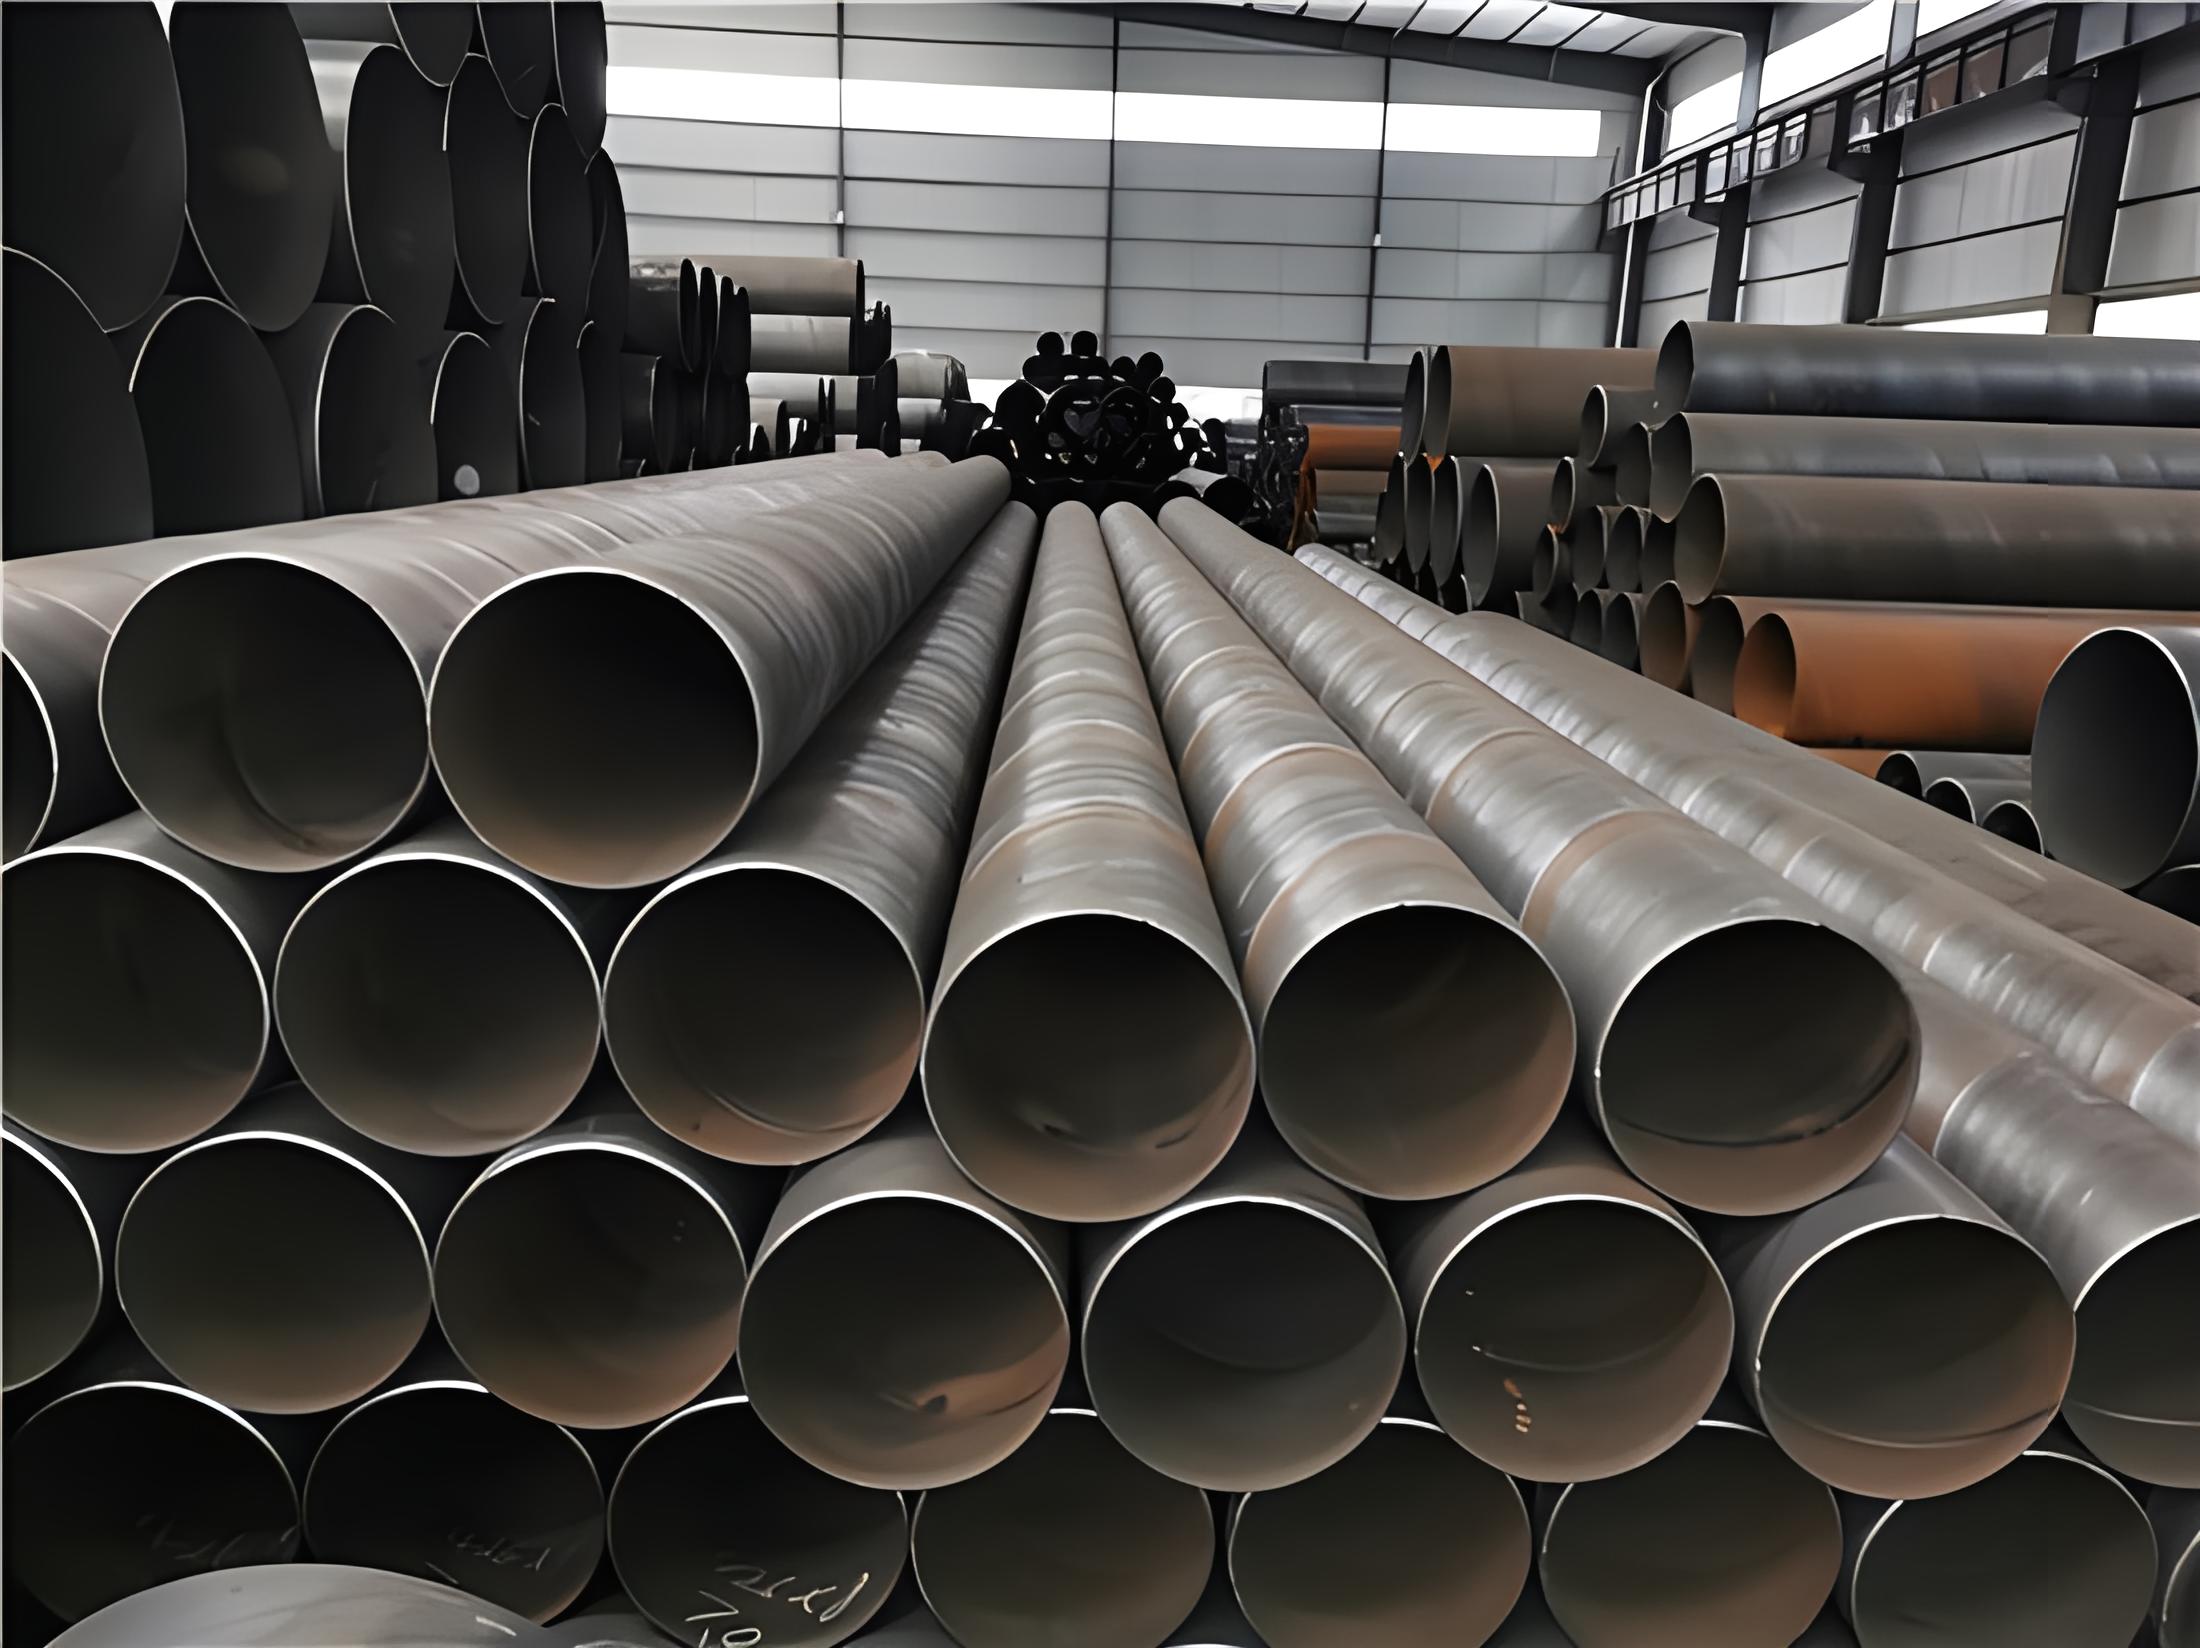 武威螺旋钢管现代工业建设的坚实基石